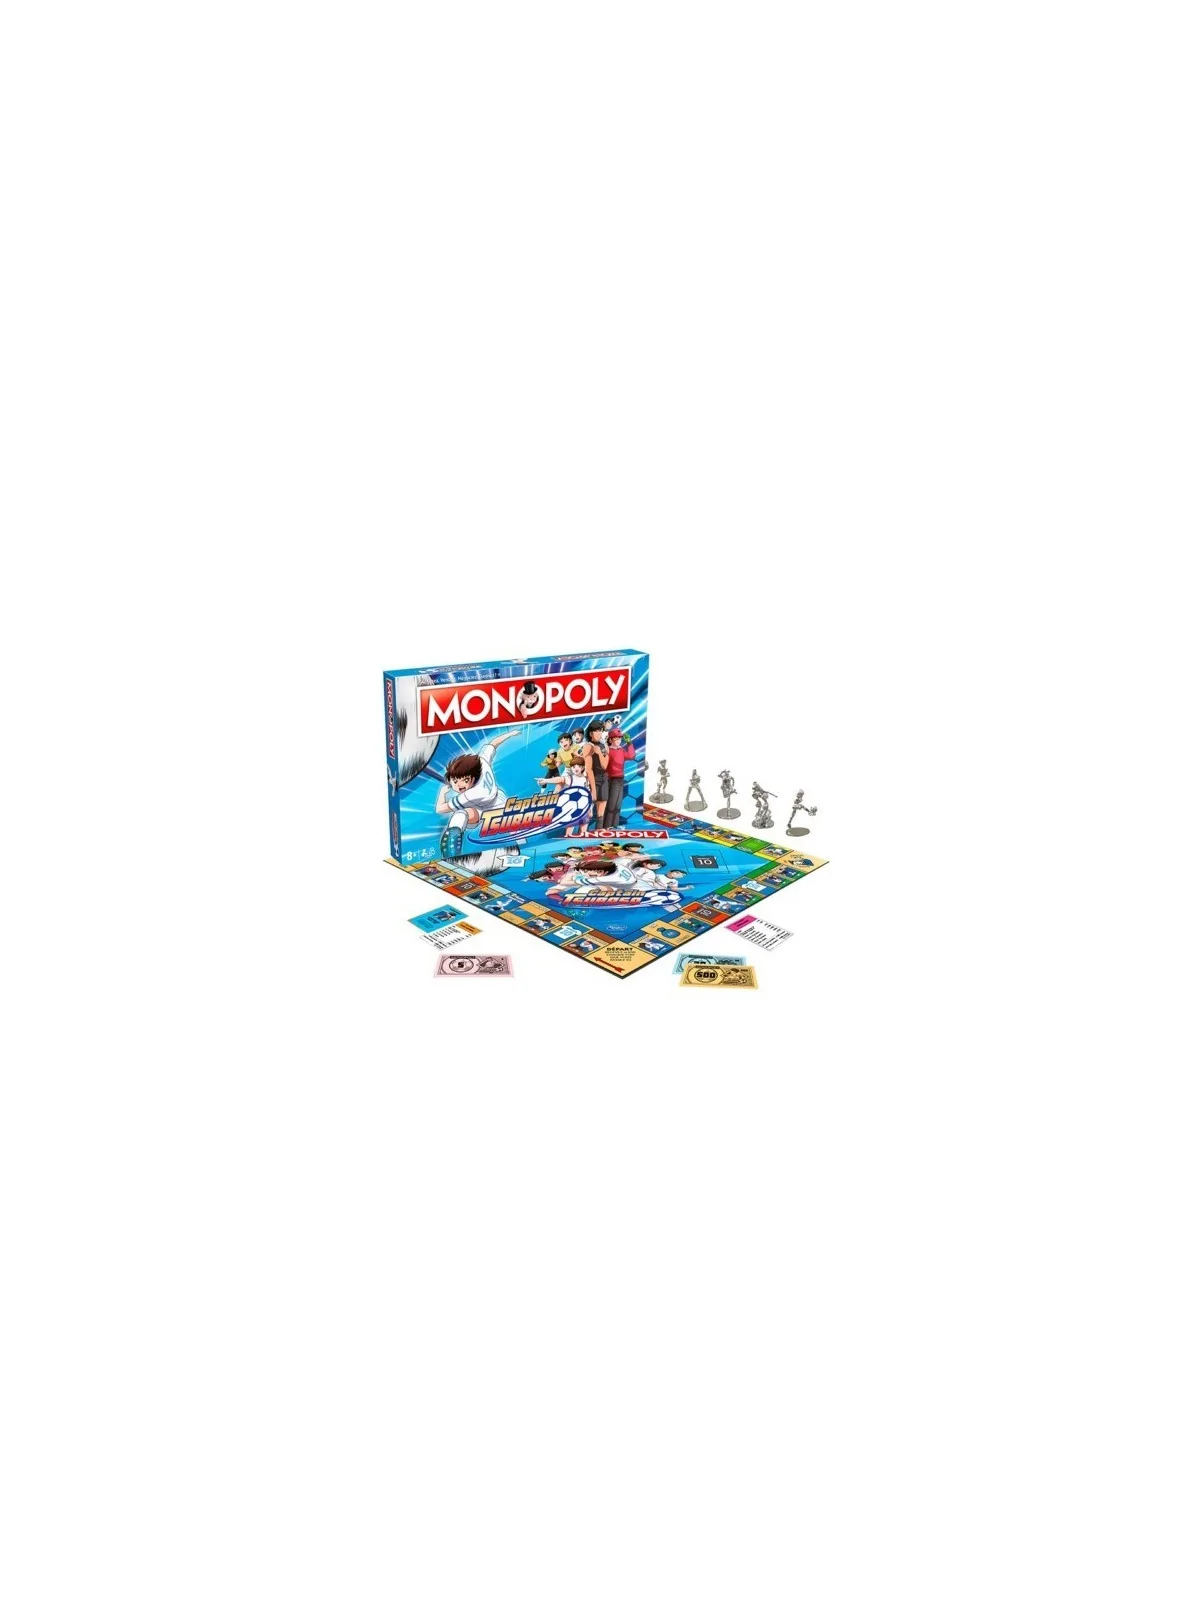 Comprar Monopoly: Captain Tsubasa (Oliver y Benji) barato al mejor pre